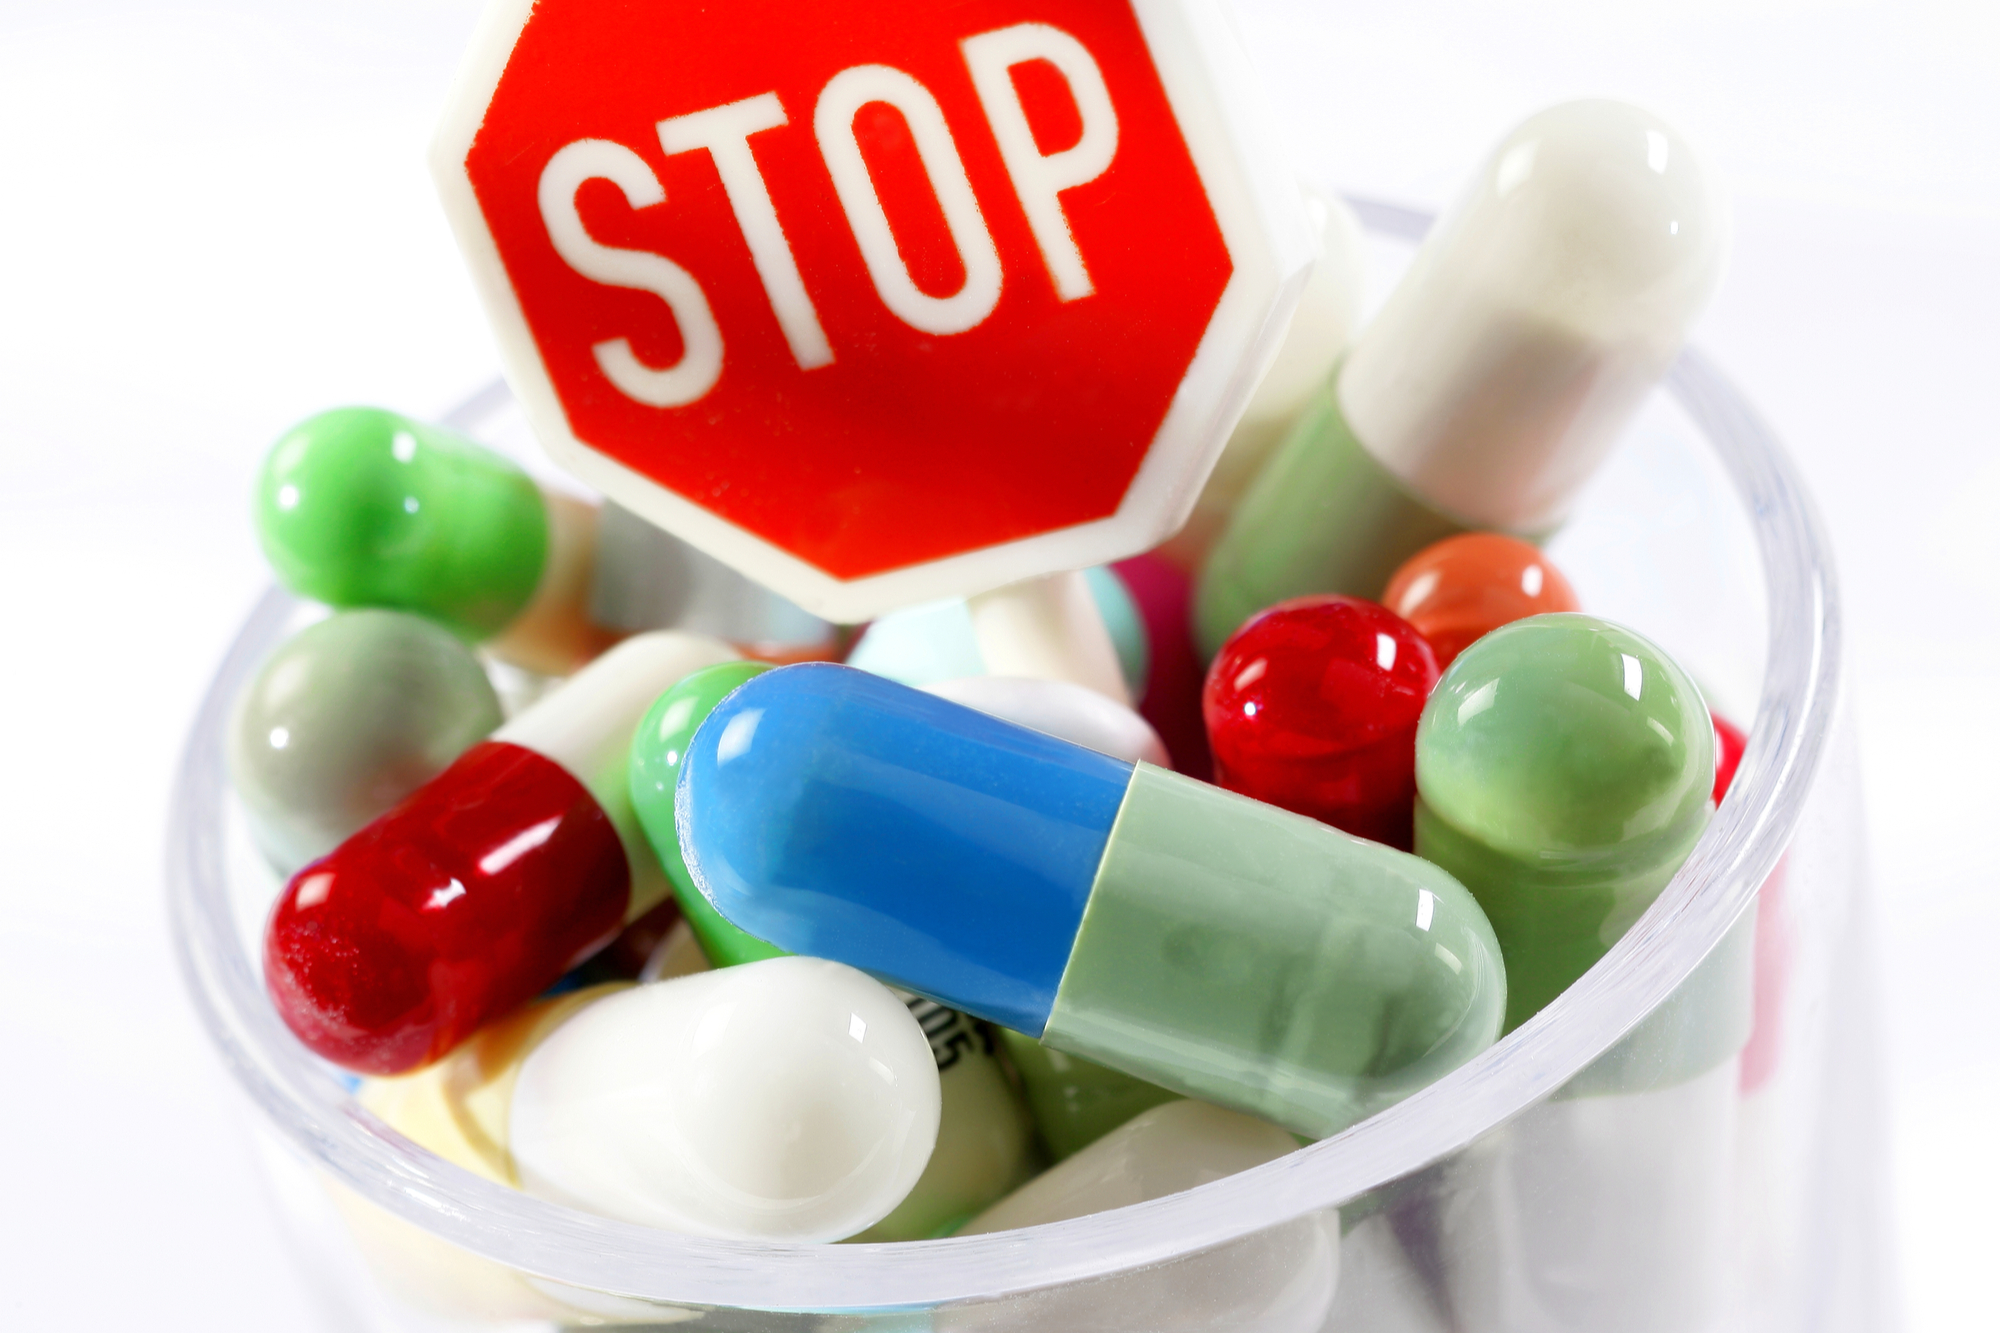 ΤΕΛΟΣ στη χορήγηση αντιβιοτικών και φαρμάκων χωρίς ιατρική συνταγή